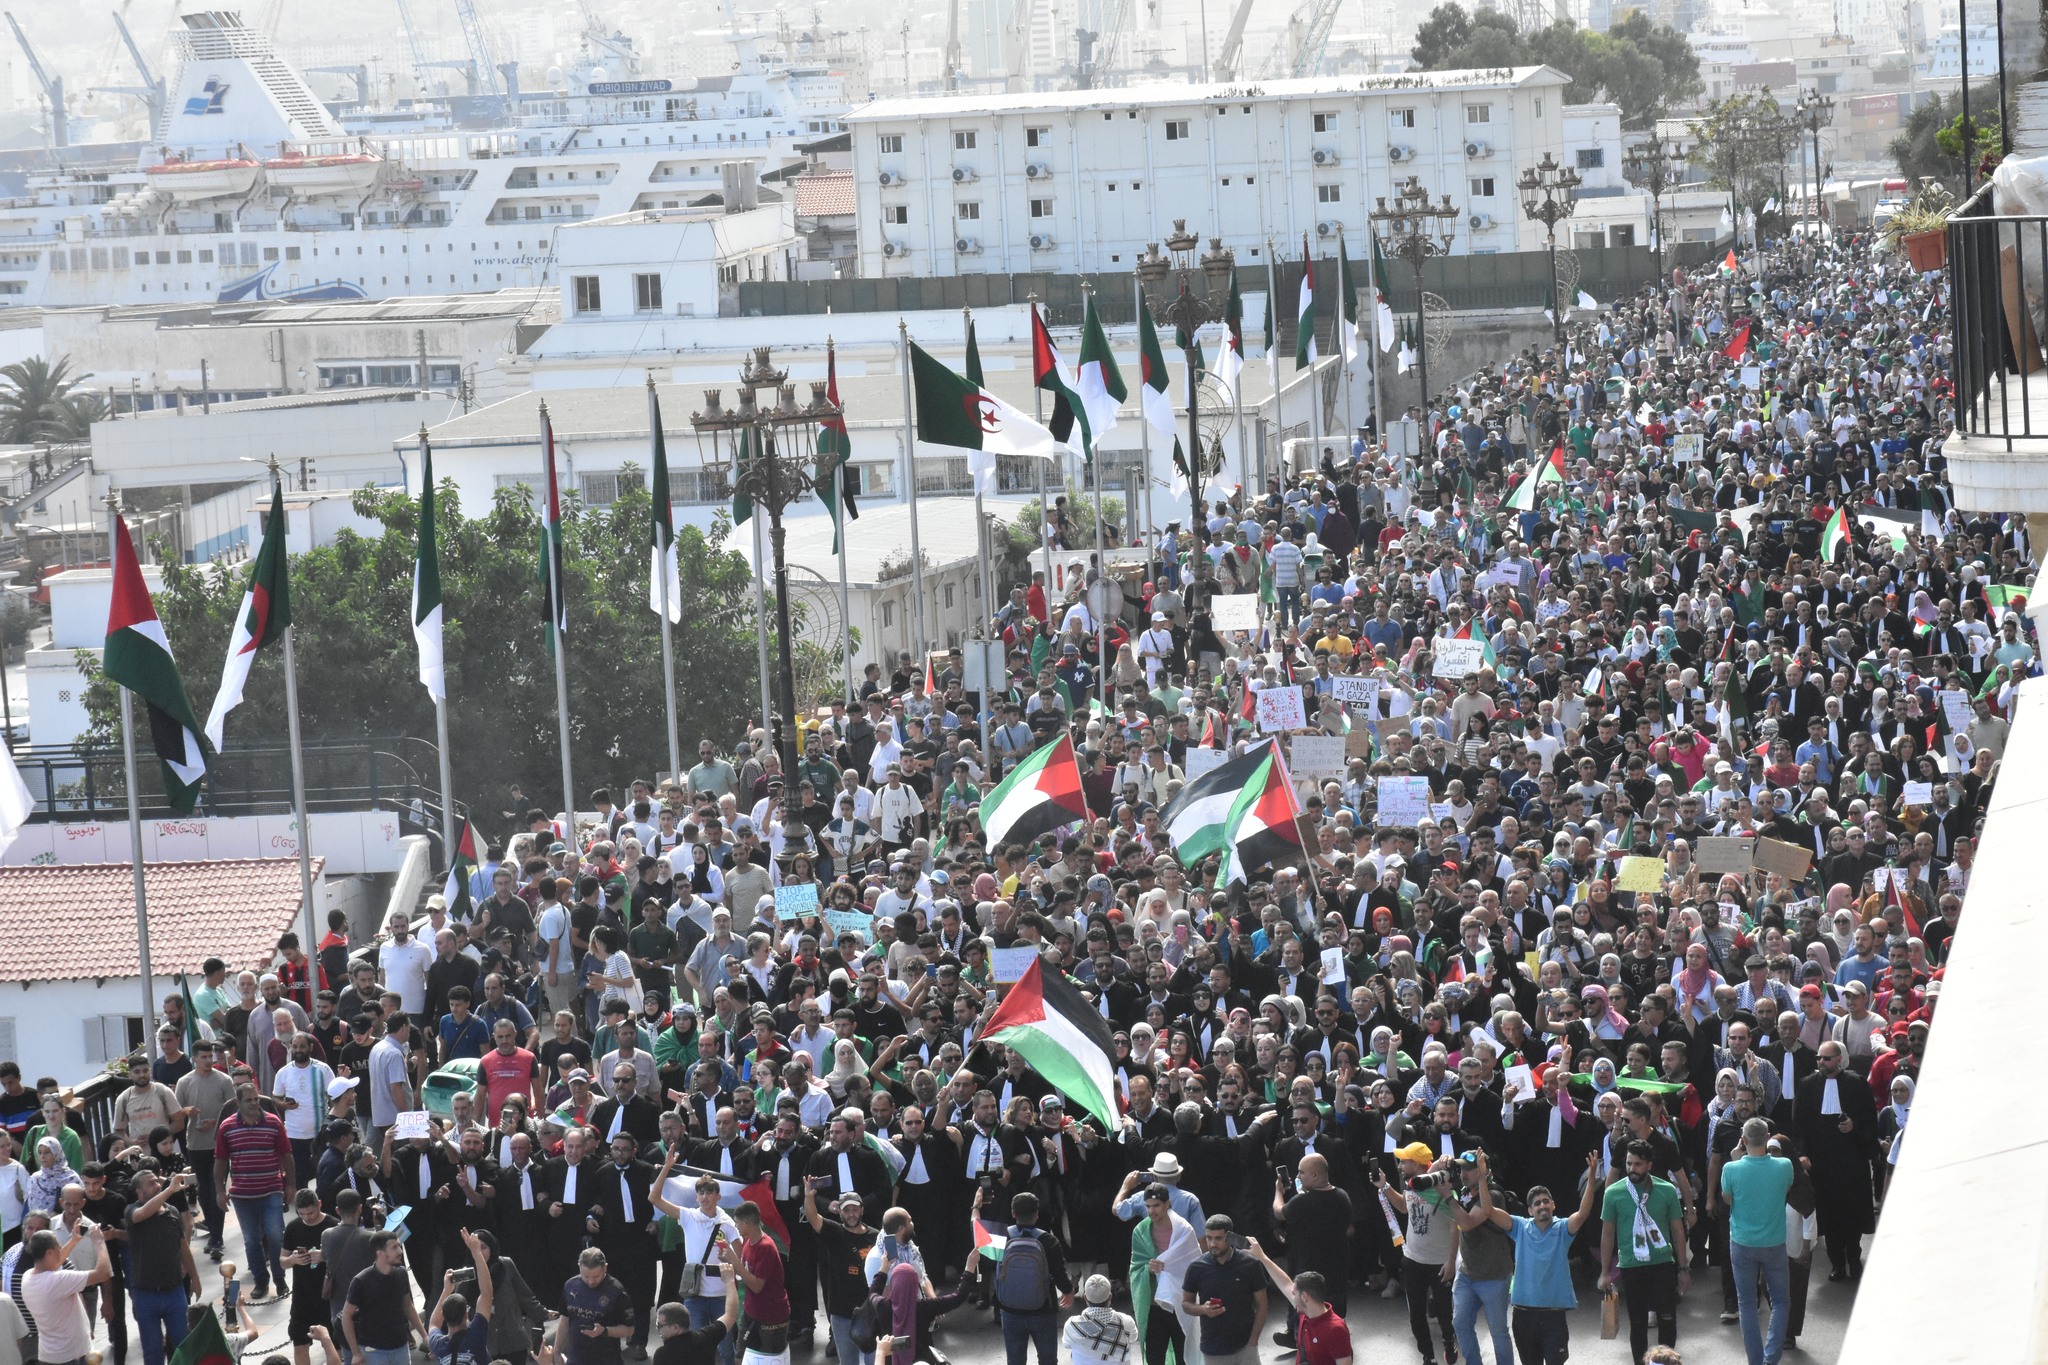 كانت أحزاب سياسية ومنظمات مدنية وهيئات رسمية، أطلقت دعوة للتظاهر في كل مناطق الجزائر، نصرة لغزة وفلسطين المحتلة (واقع التواصل)